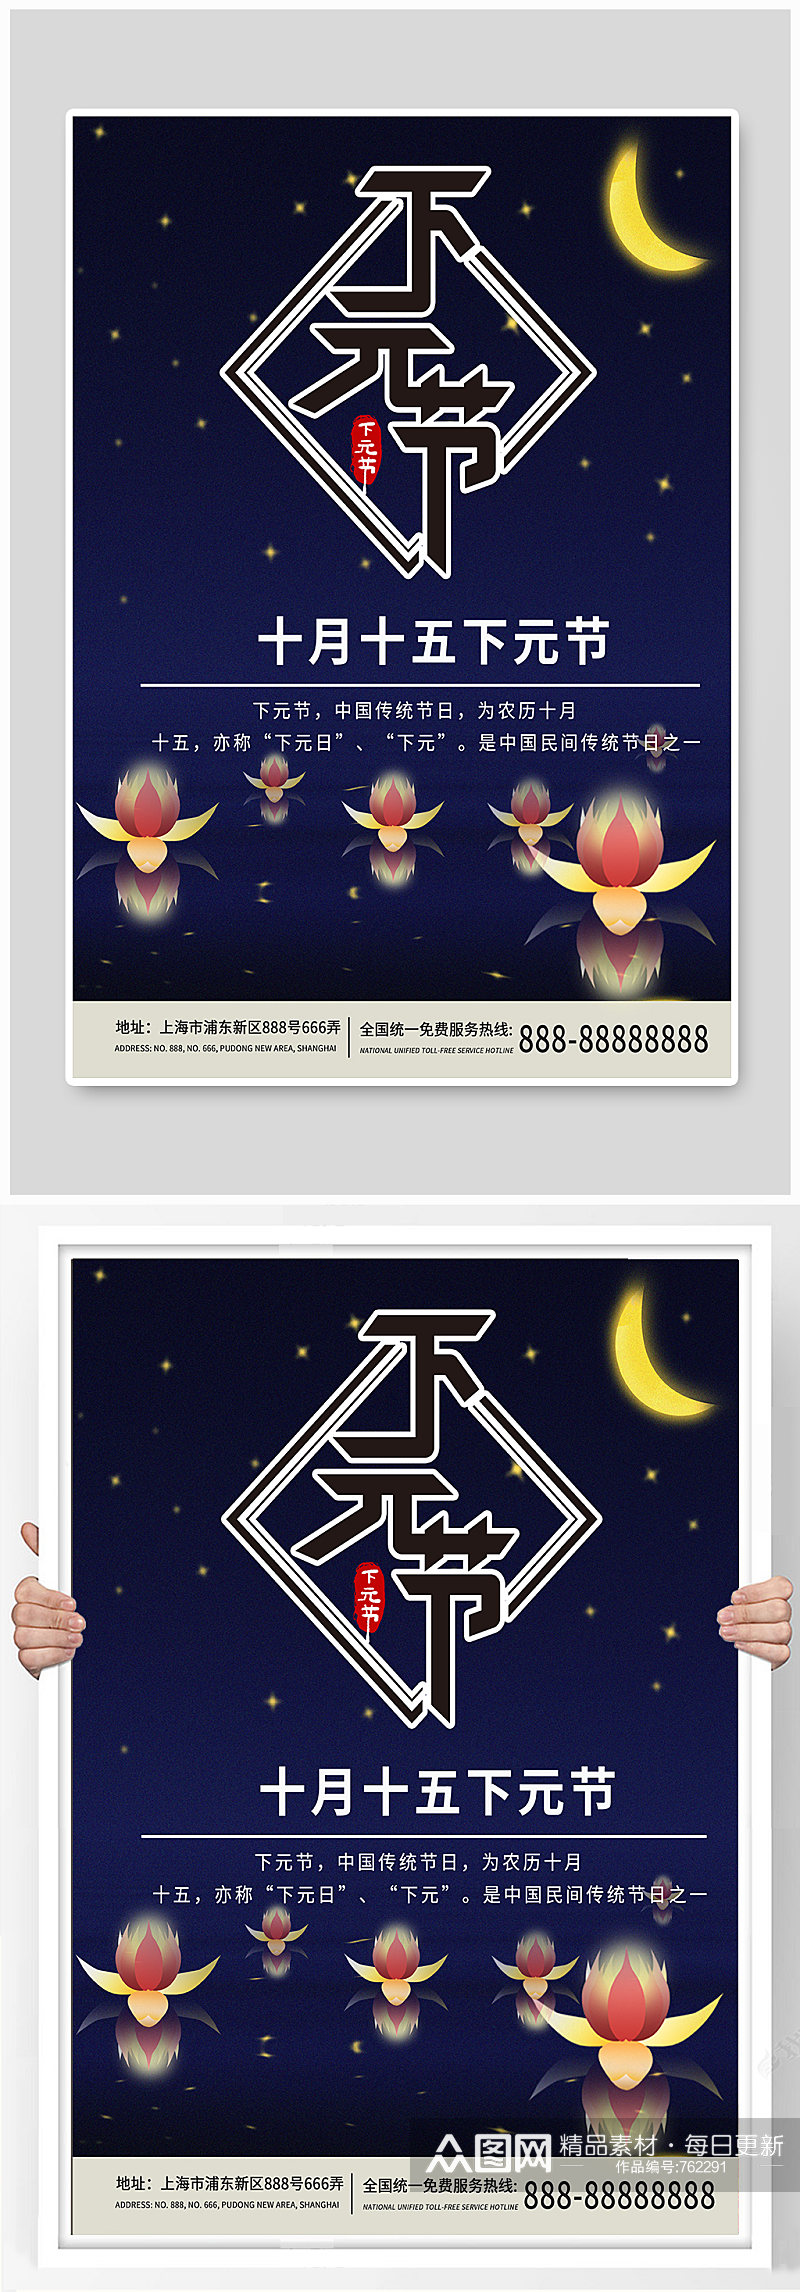 下元节日月亮手绘海报素材